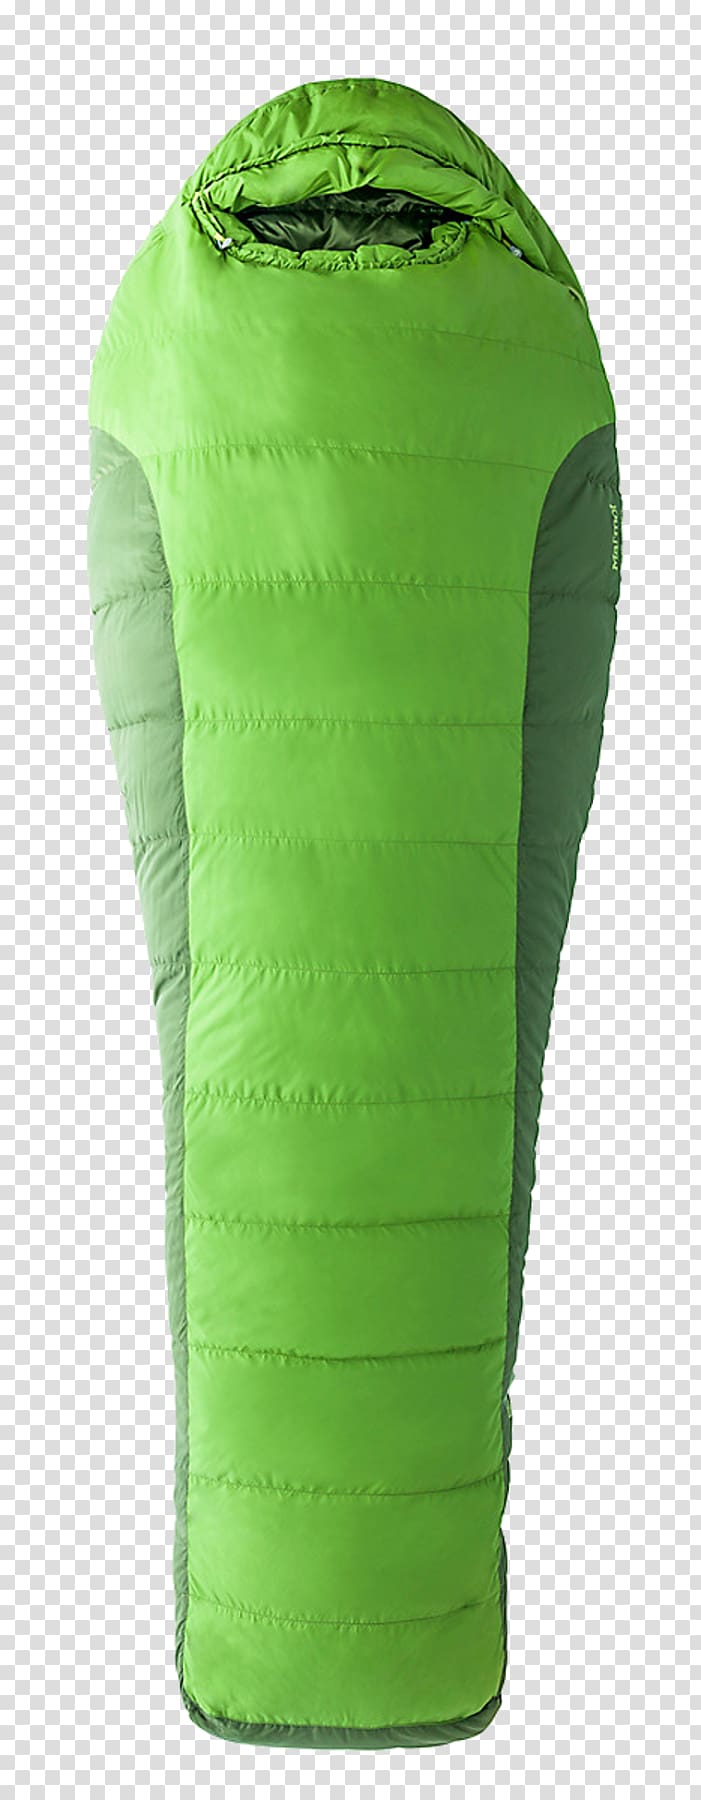 Marmot Sleeping Bags Zipper Outdoor Recreation, zipper transparent background PNG clipart